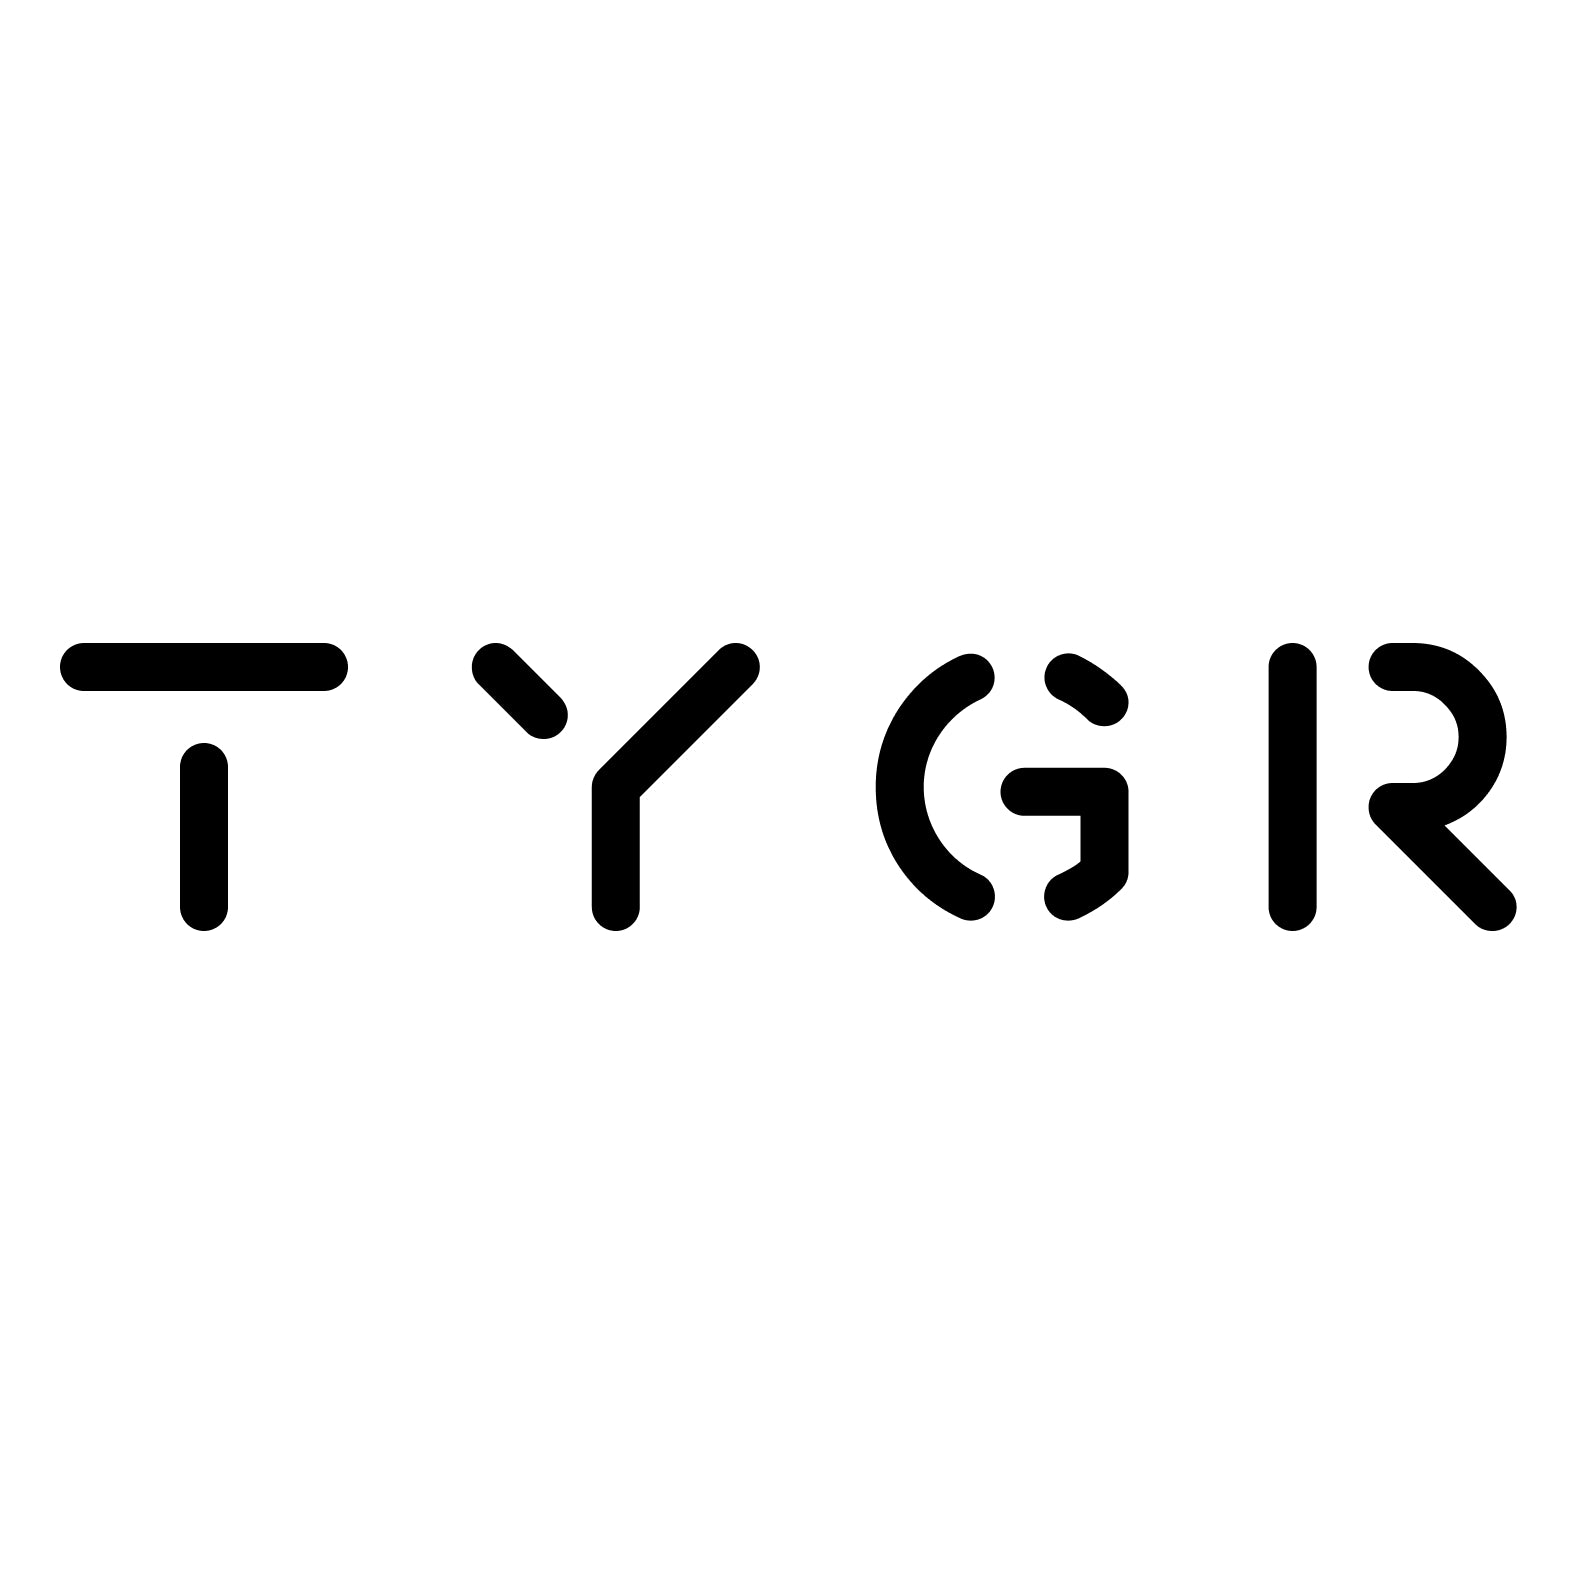       Werkzeugeinlage - Anleitung zum Selberbauen | TYGR – tygr.store